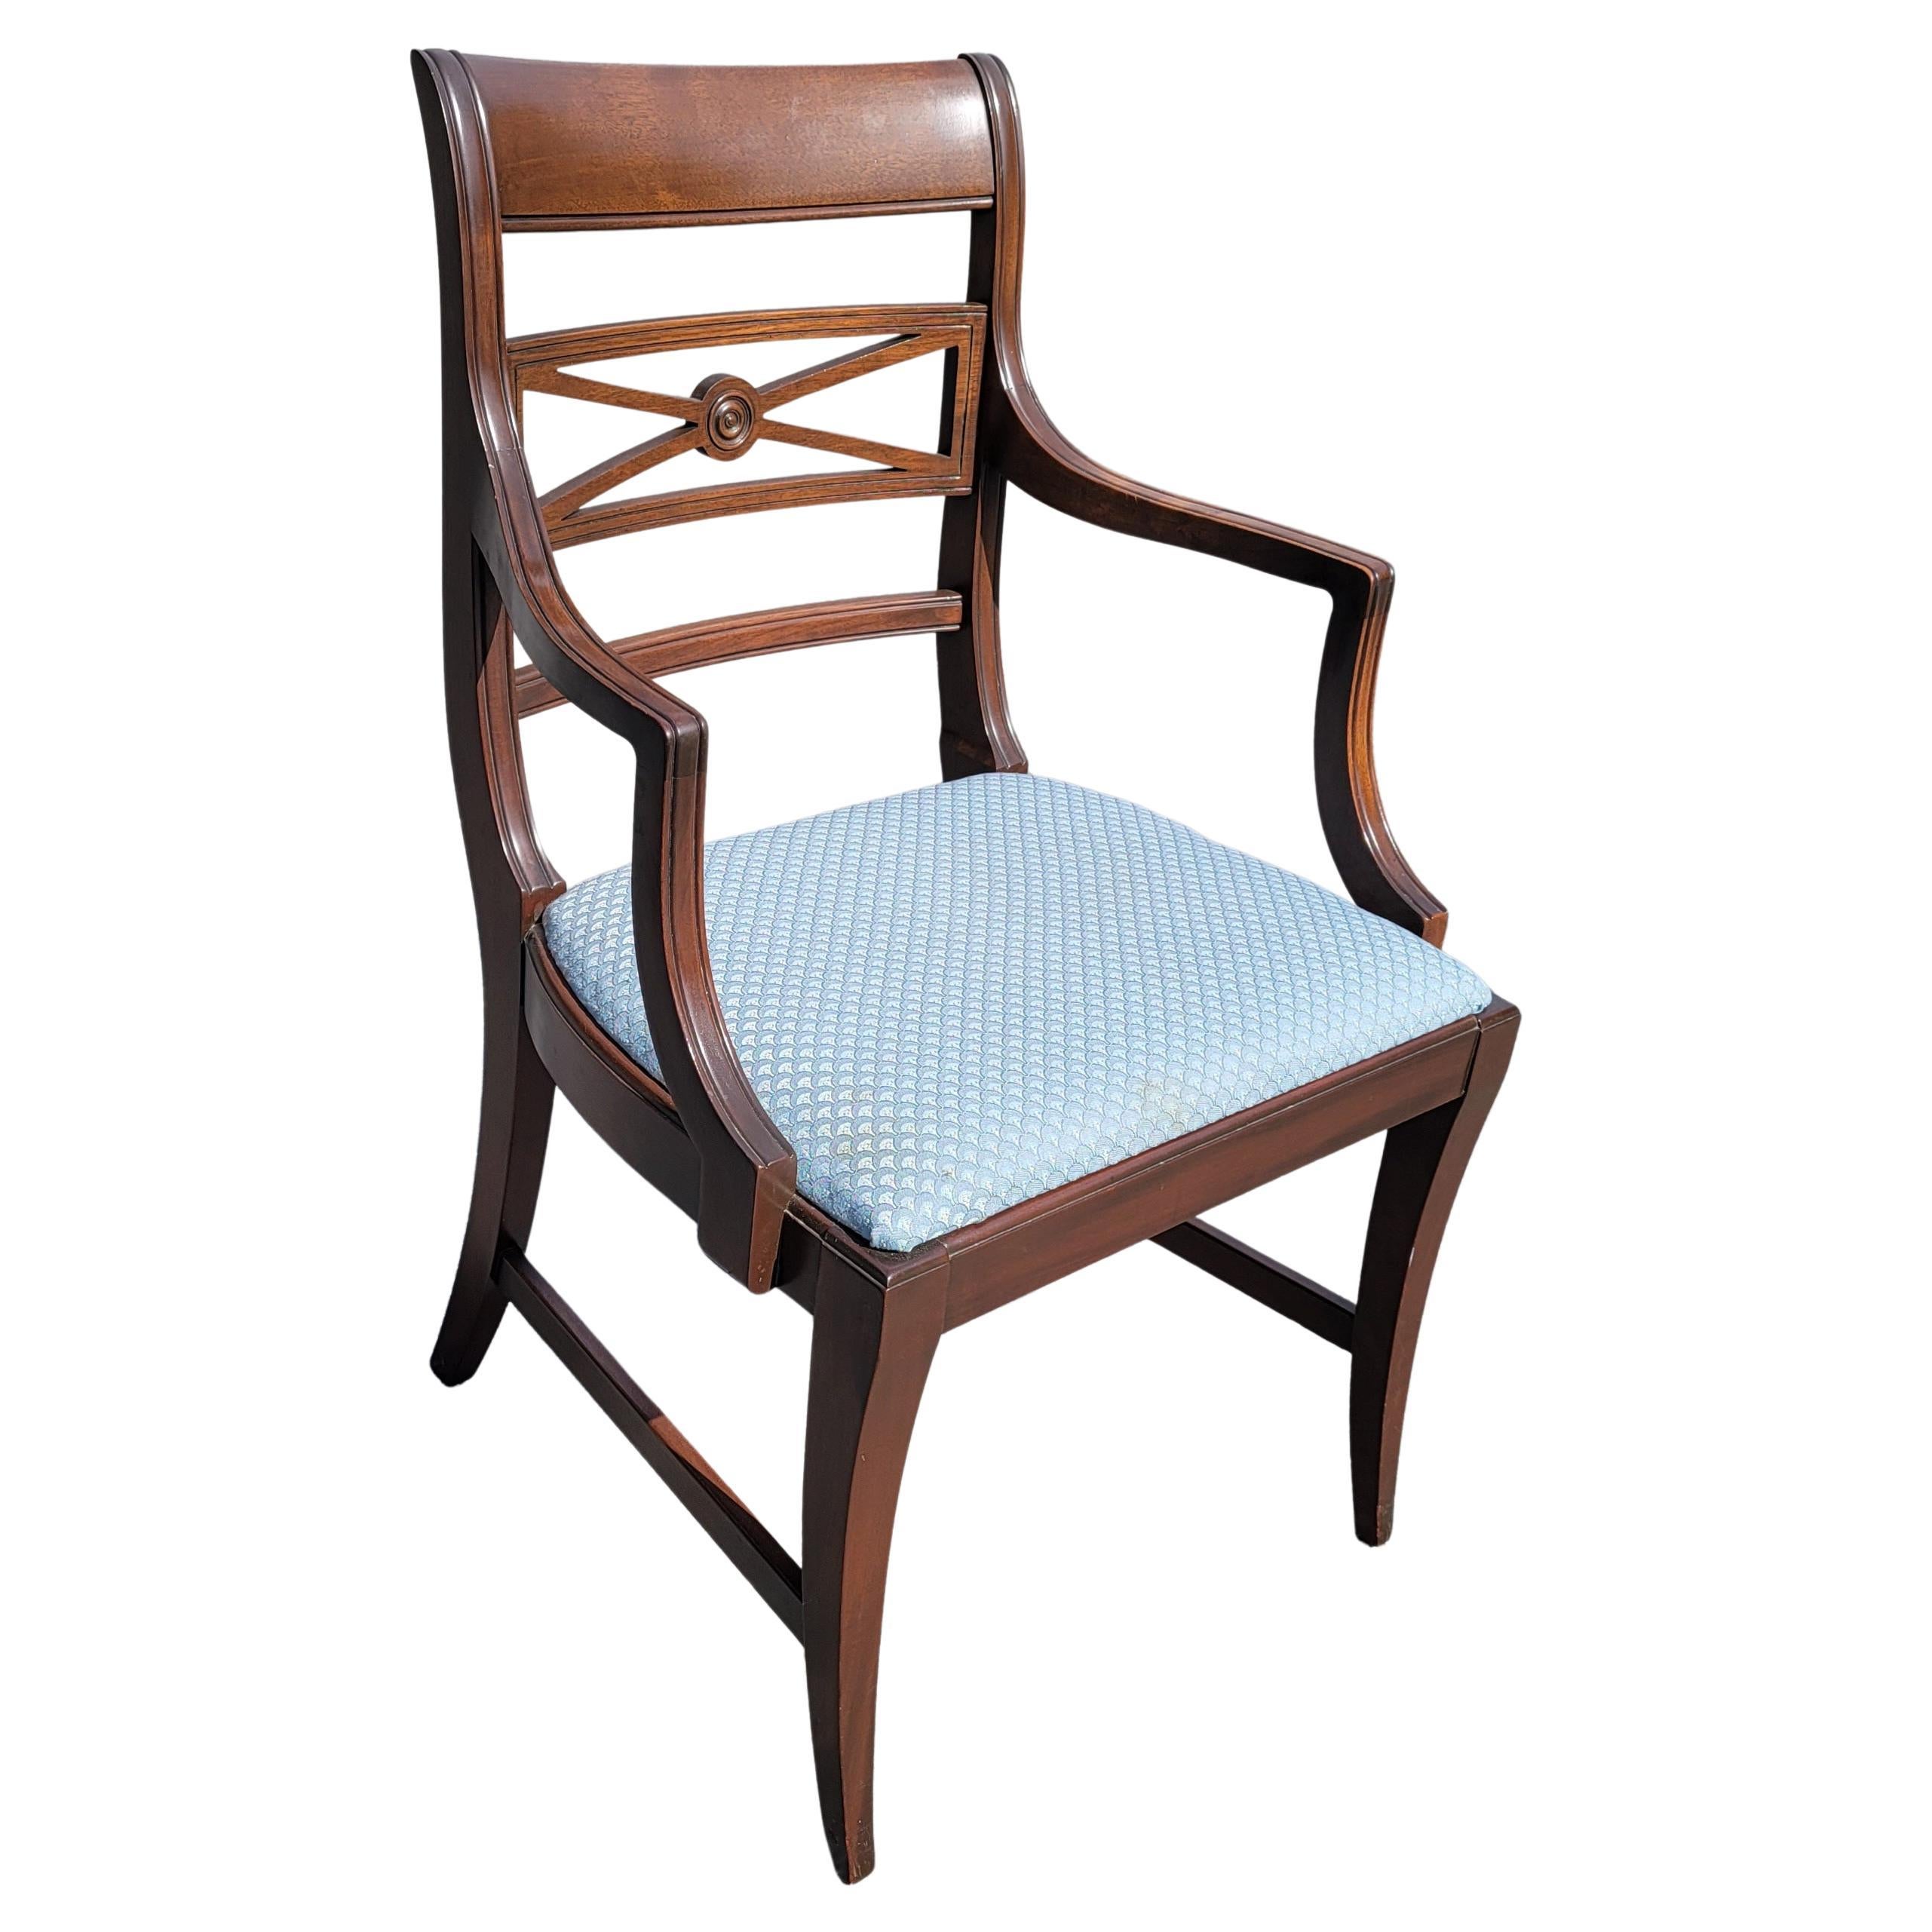 Nous vous présentons cette magnifique paire de fauteuils en acajou massif de style Régence du début du 20e siècle par Estay Manufacturing Co. Estay a été fondé en 1879 et se spécialise dans les meubles d'orgue, de salle à manger et de chambre à